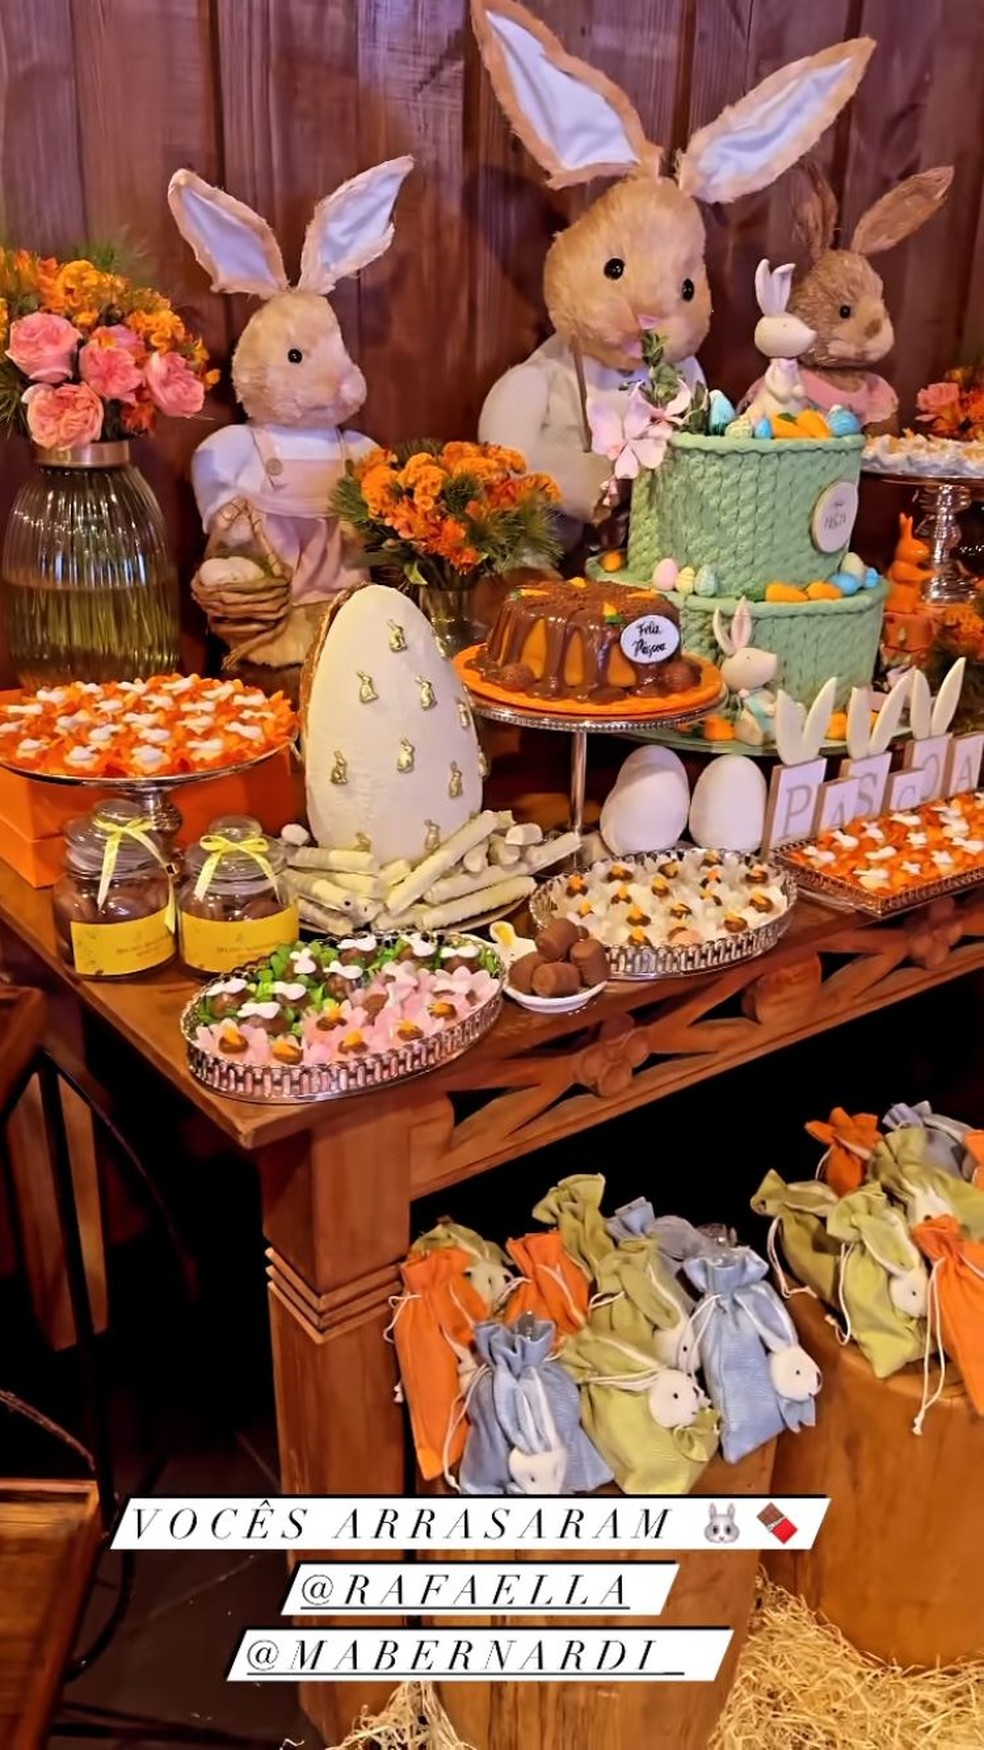 Decoração do almoço de Páscoa oferecido por Rafaella Santos — Foto: reprodução / instagram